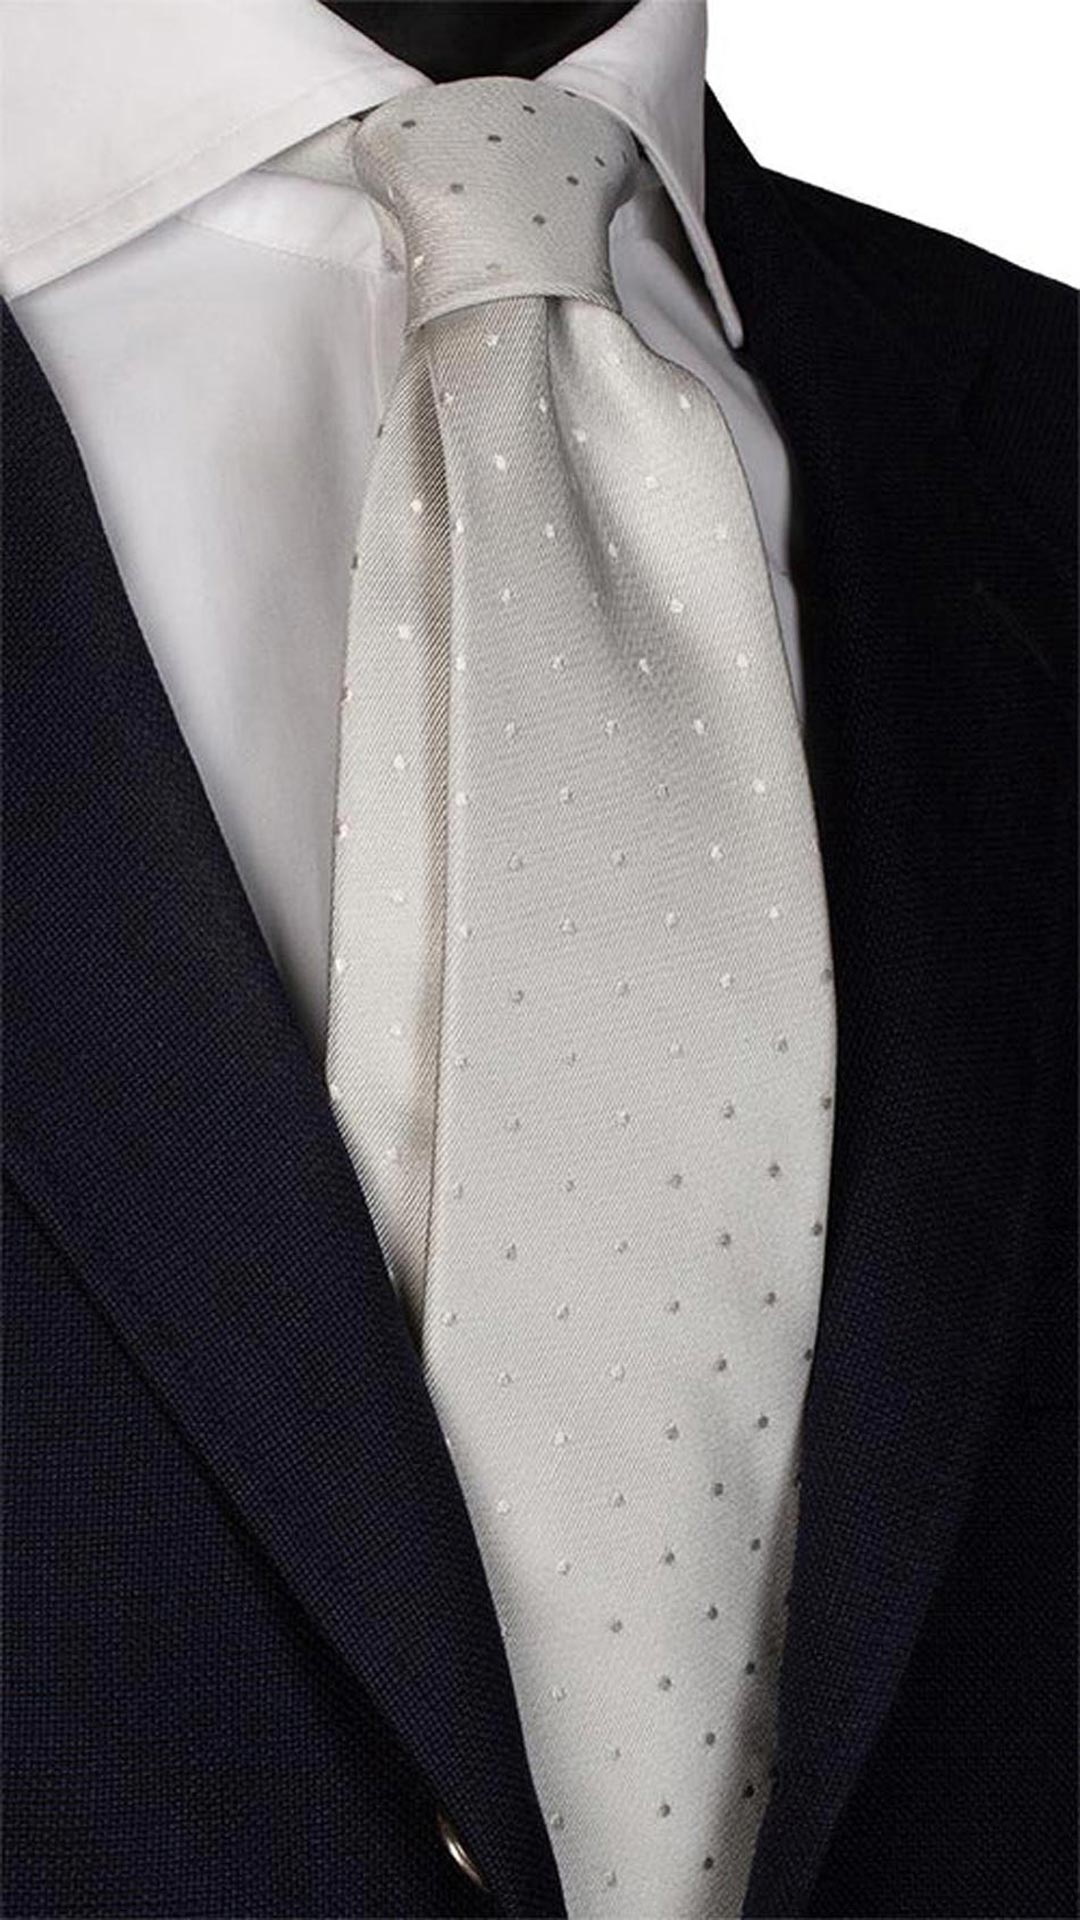 Cravatta da Cerimonia di Seta Grigia Argento a Pois Bianchi CY5904 Made in Italy Graffeo Cravatte